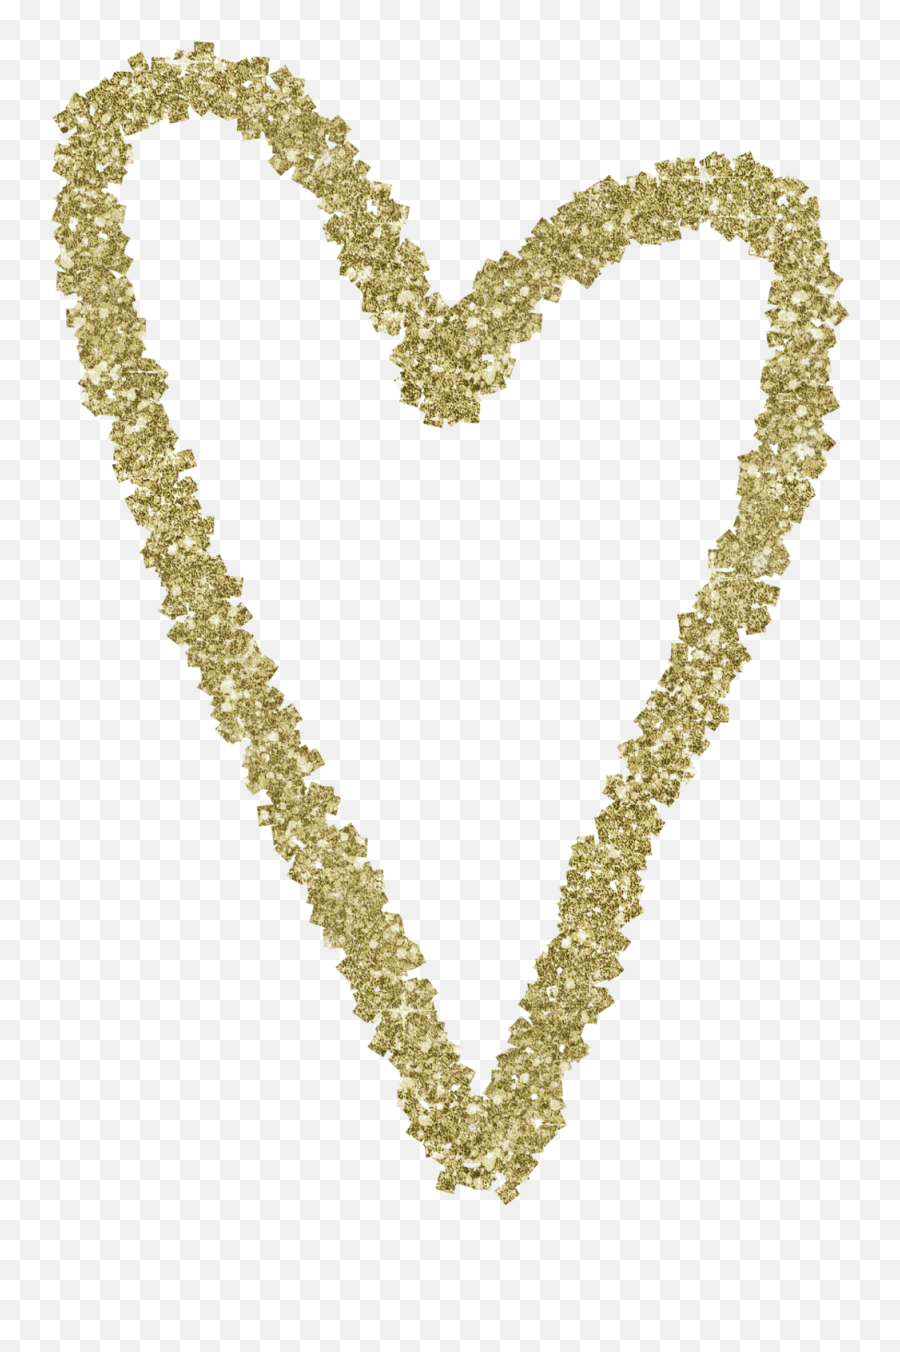 Gold Glitter Heart 7 - Gold Glitter Heart Png Transparent Emoji,Gold Glitter Png